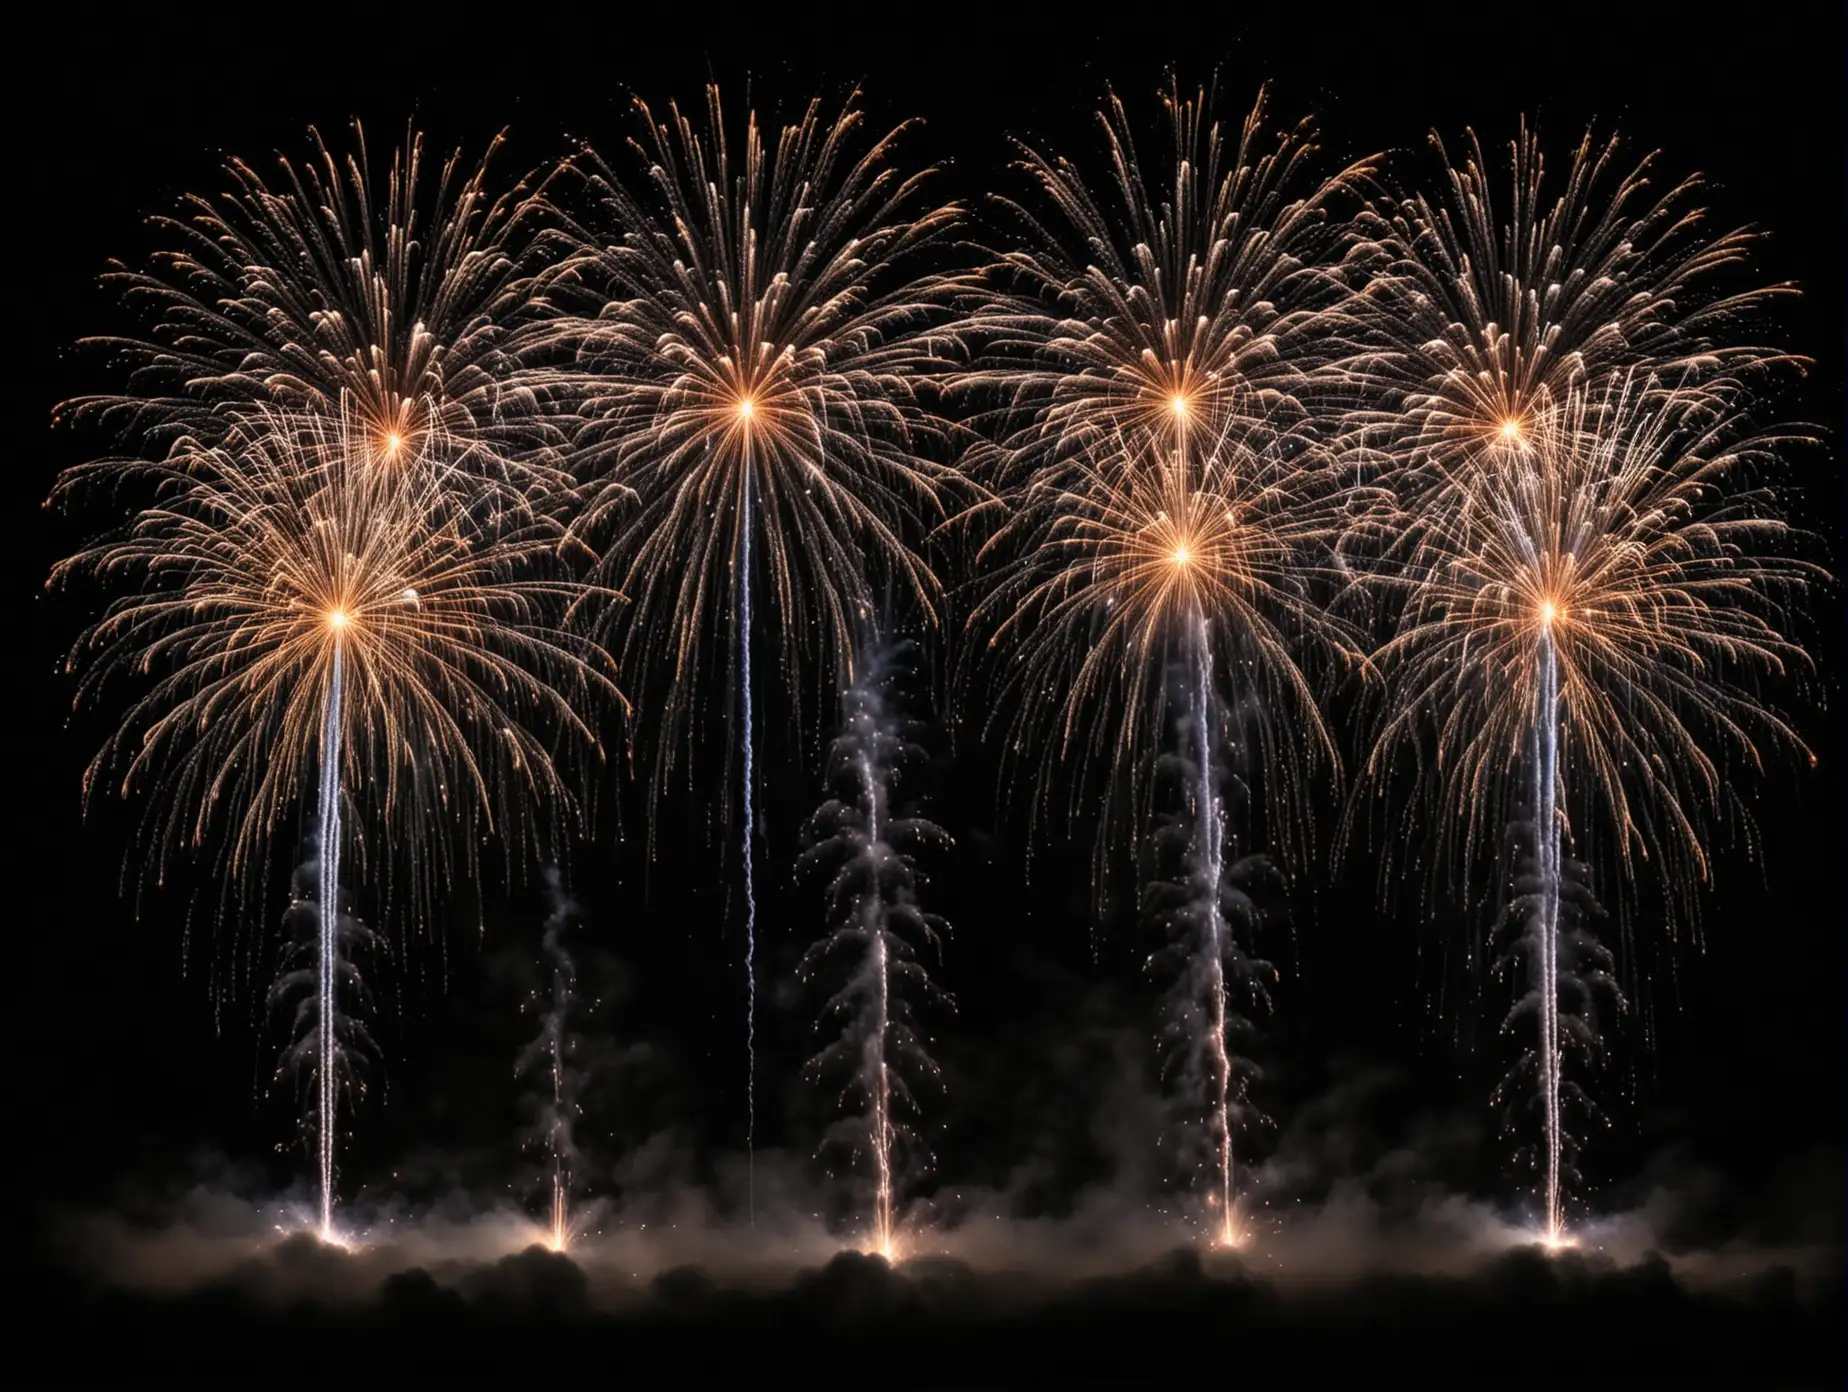 Mesmerizing Fireworks Display Against Dark Sky